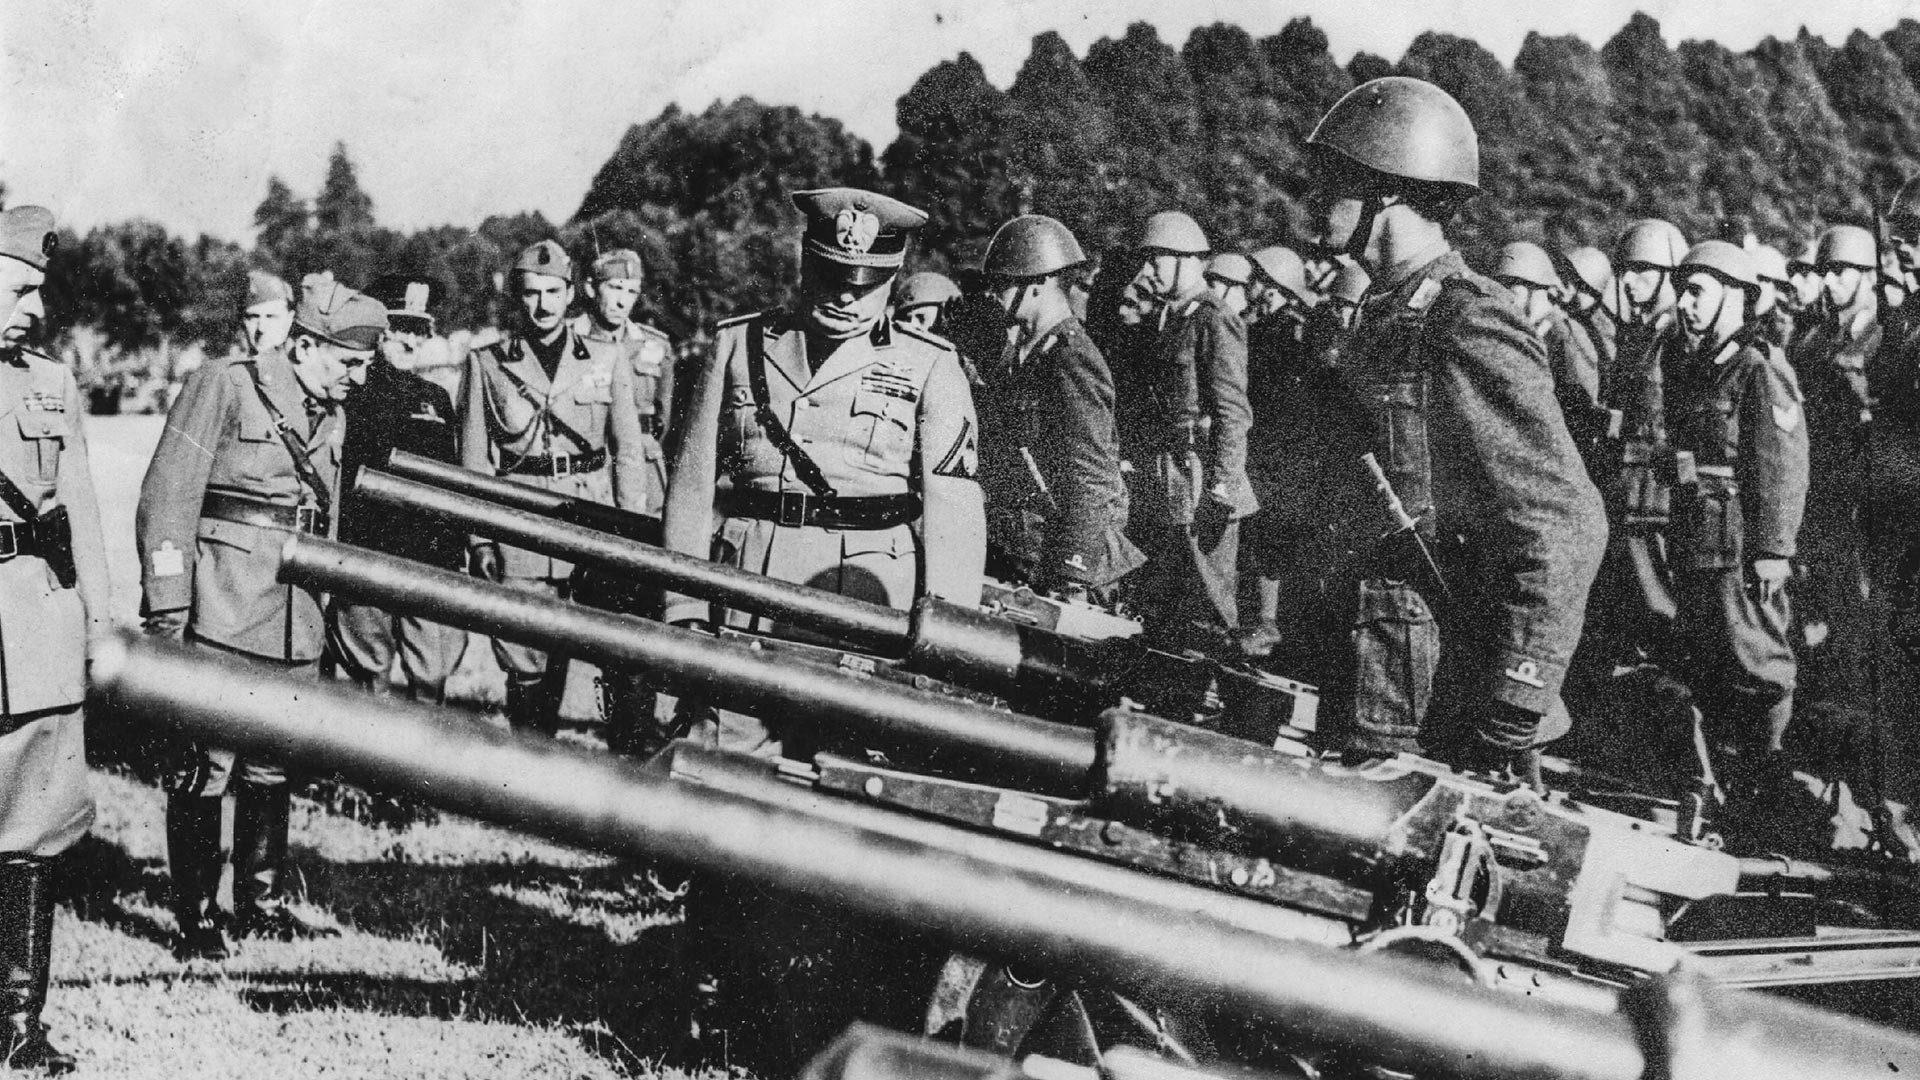 Benito Mussolini ispeziona i quattro cannoni che ha inviato con la prima divisione di soldati sul fronte russo
